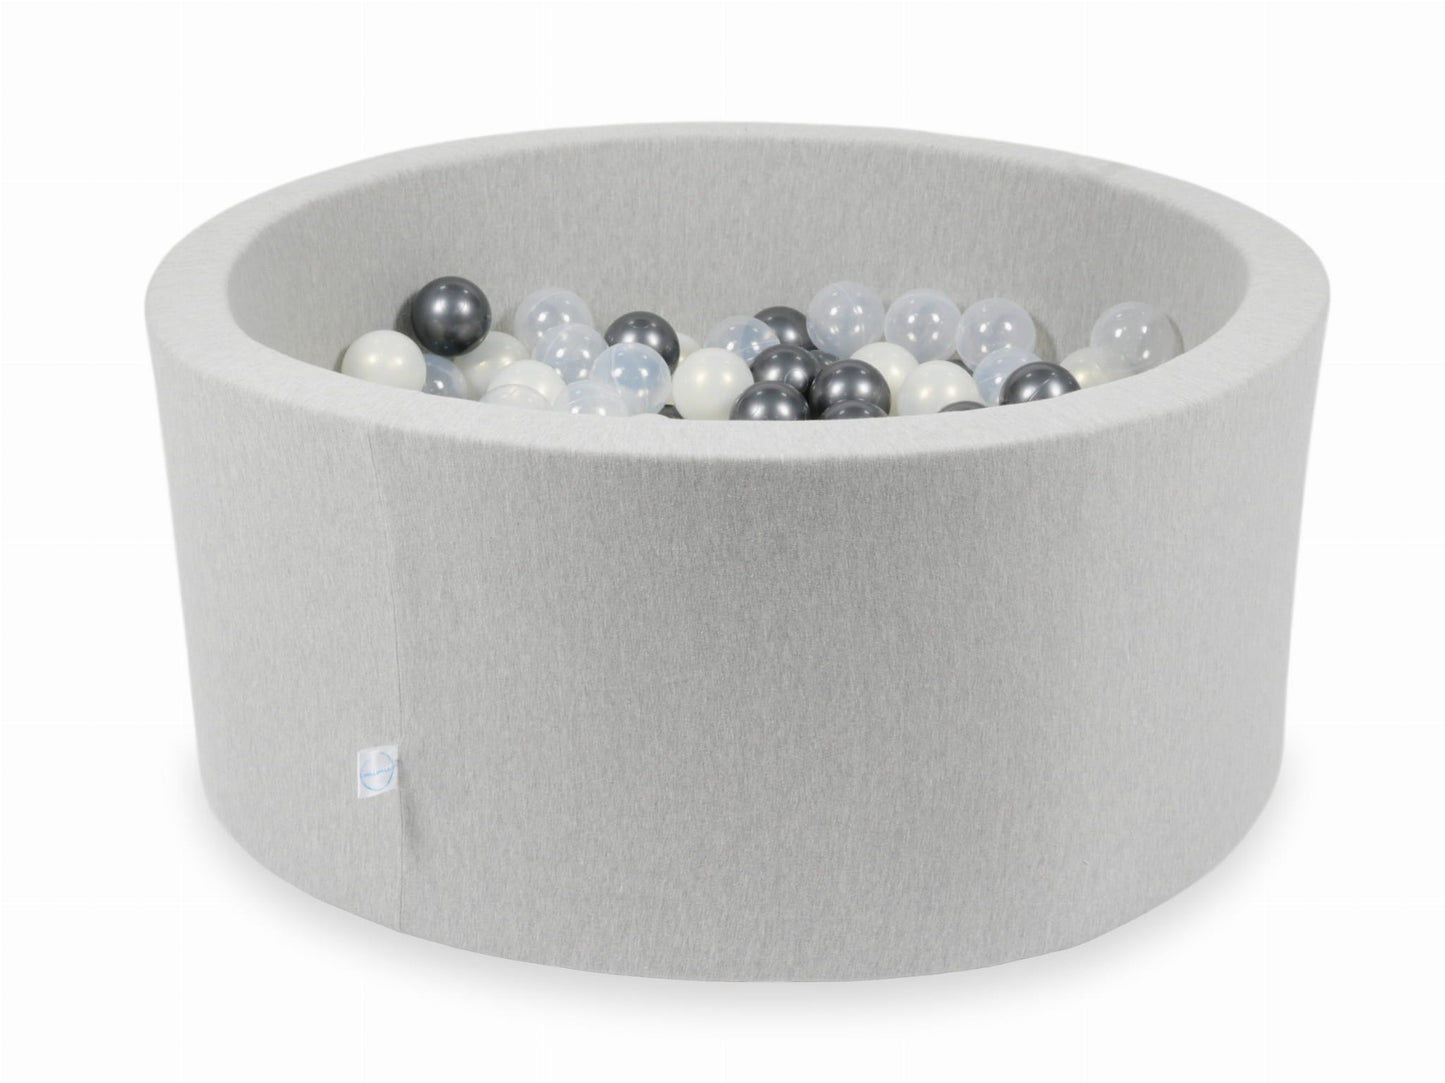 Piscine à Balles 90x40 gris clair avec balles 300 pcs (transparent, graphite métallique, iridescentes)